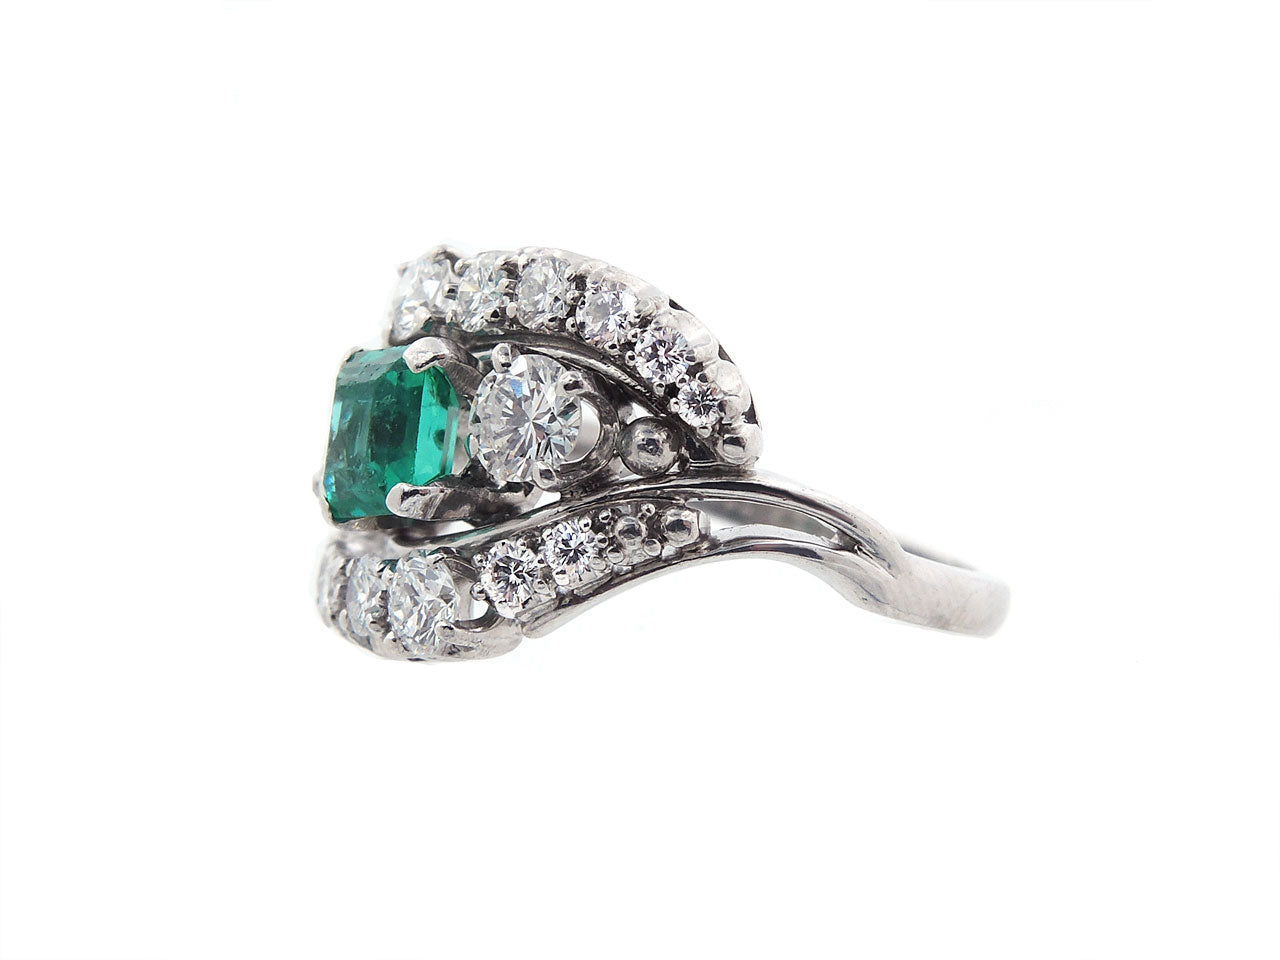 Jabel Emerald and Diamond Ring in Platinum